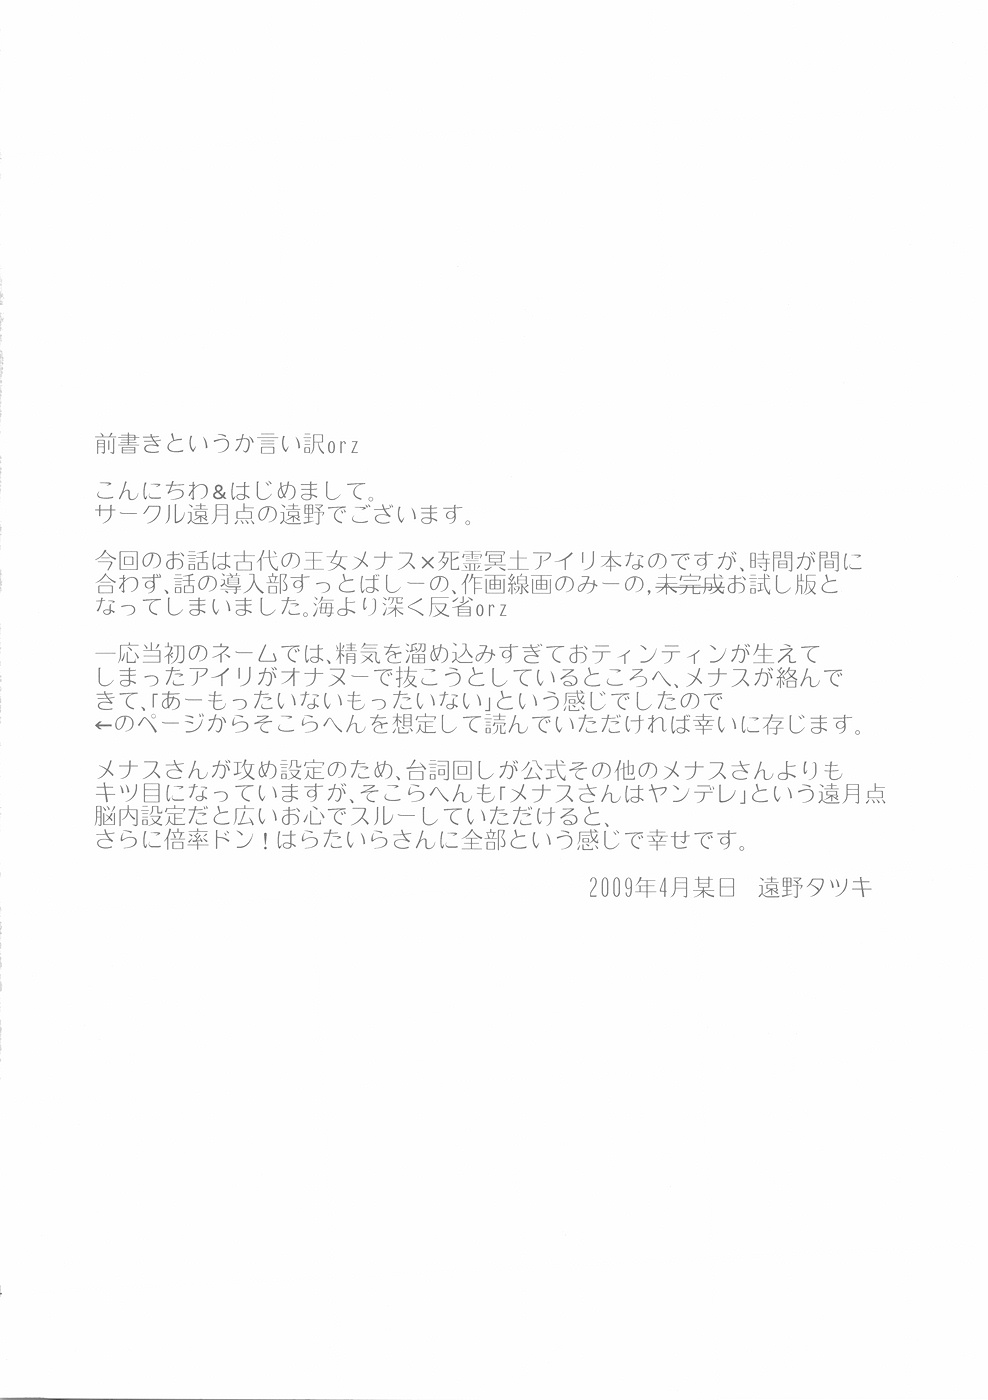 [遠月点] Shiryou Maid wa Kodai Oujo no Fera Deikuka -Otameshi Han- 